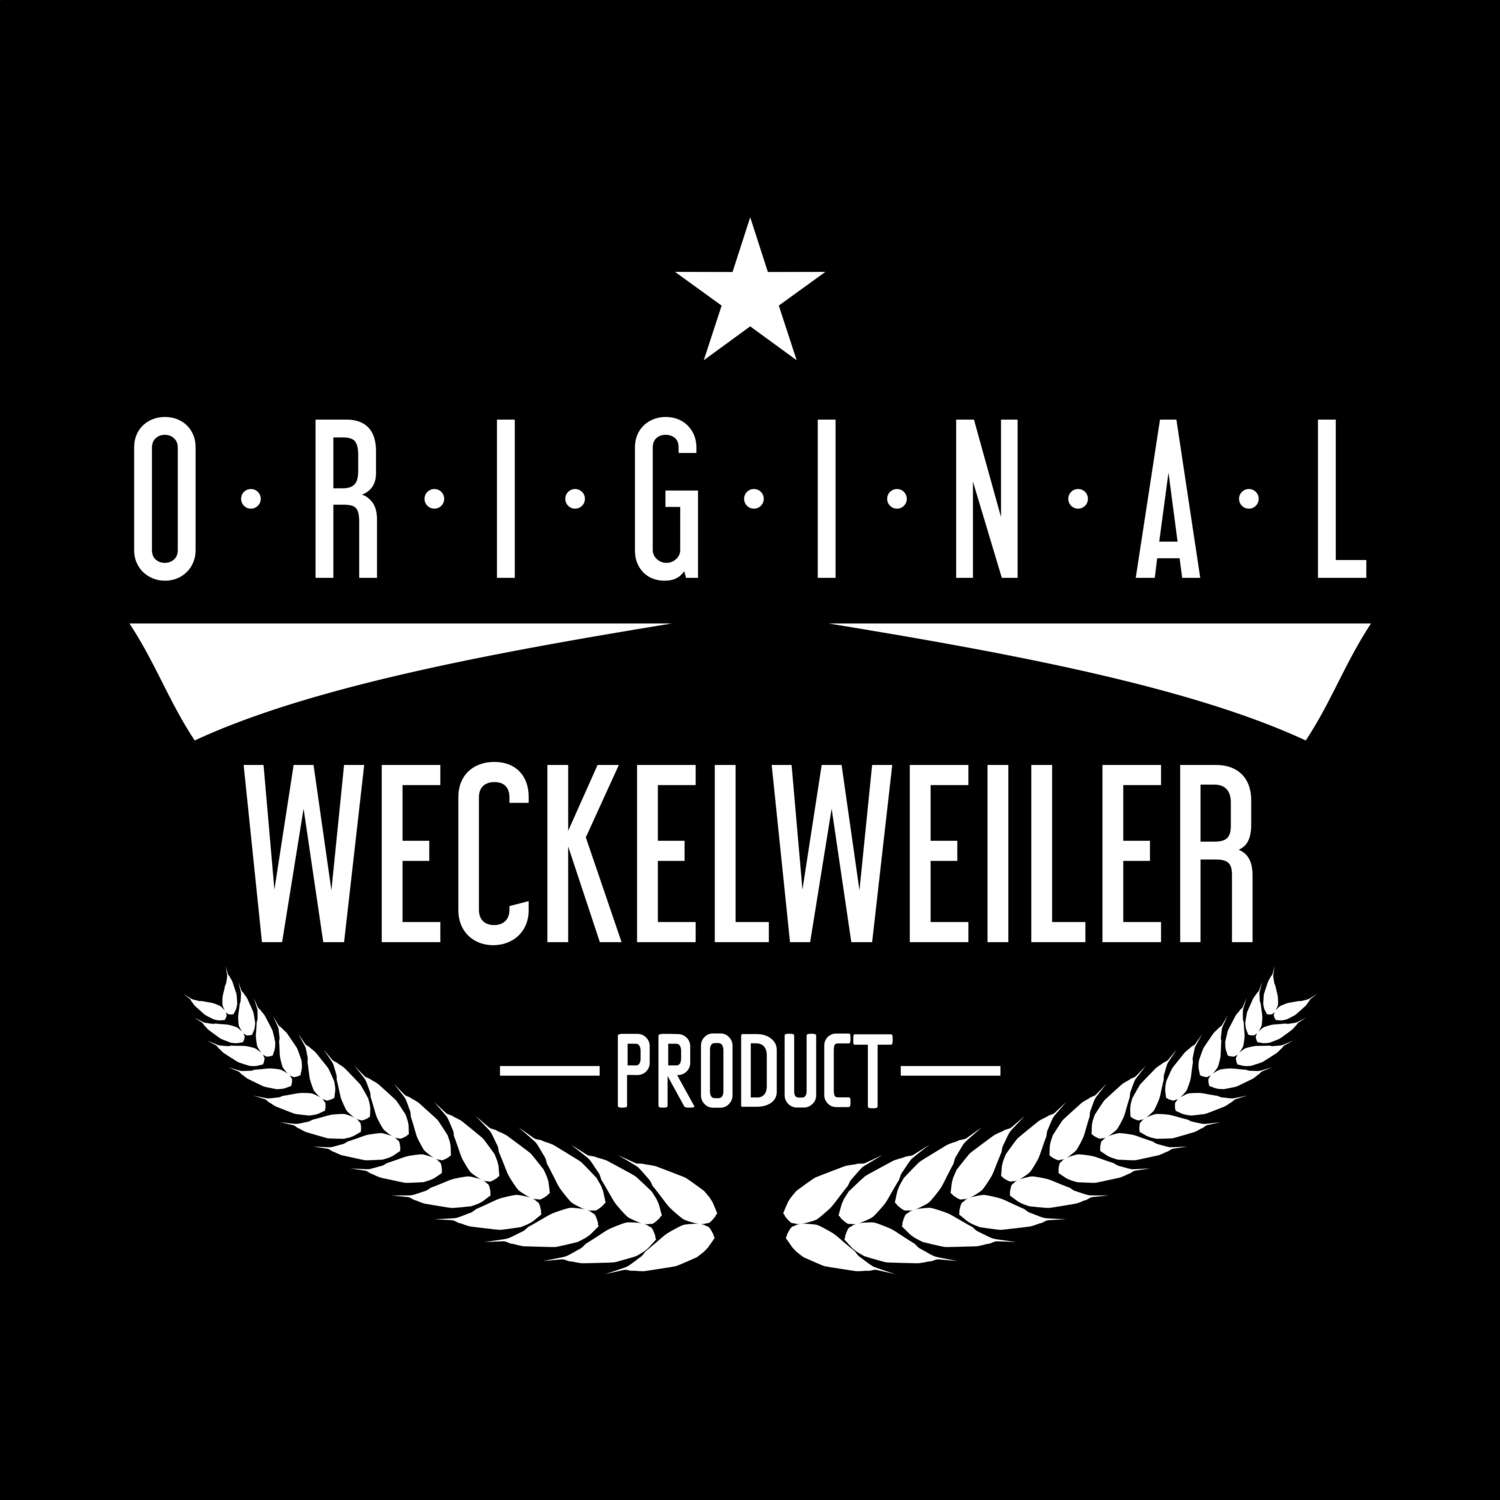 Weckelweiler T-Shirt »Original Product«